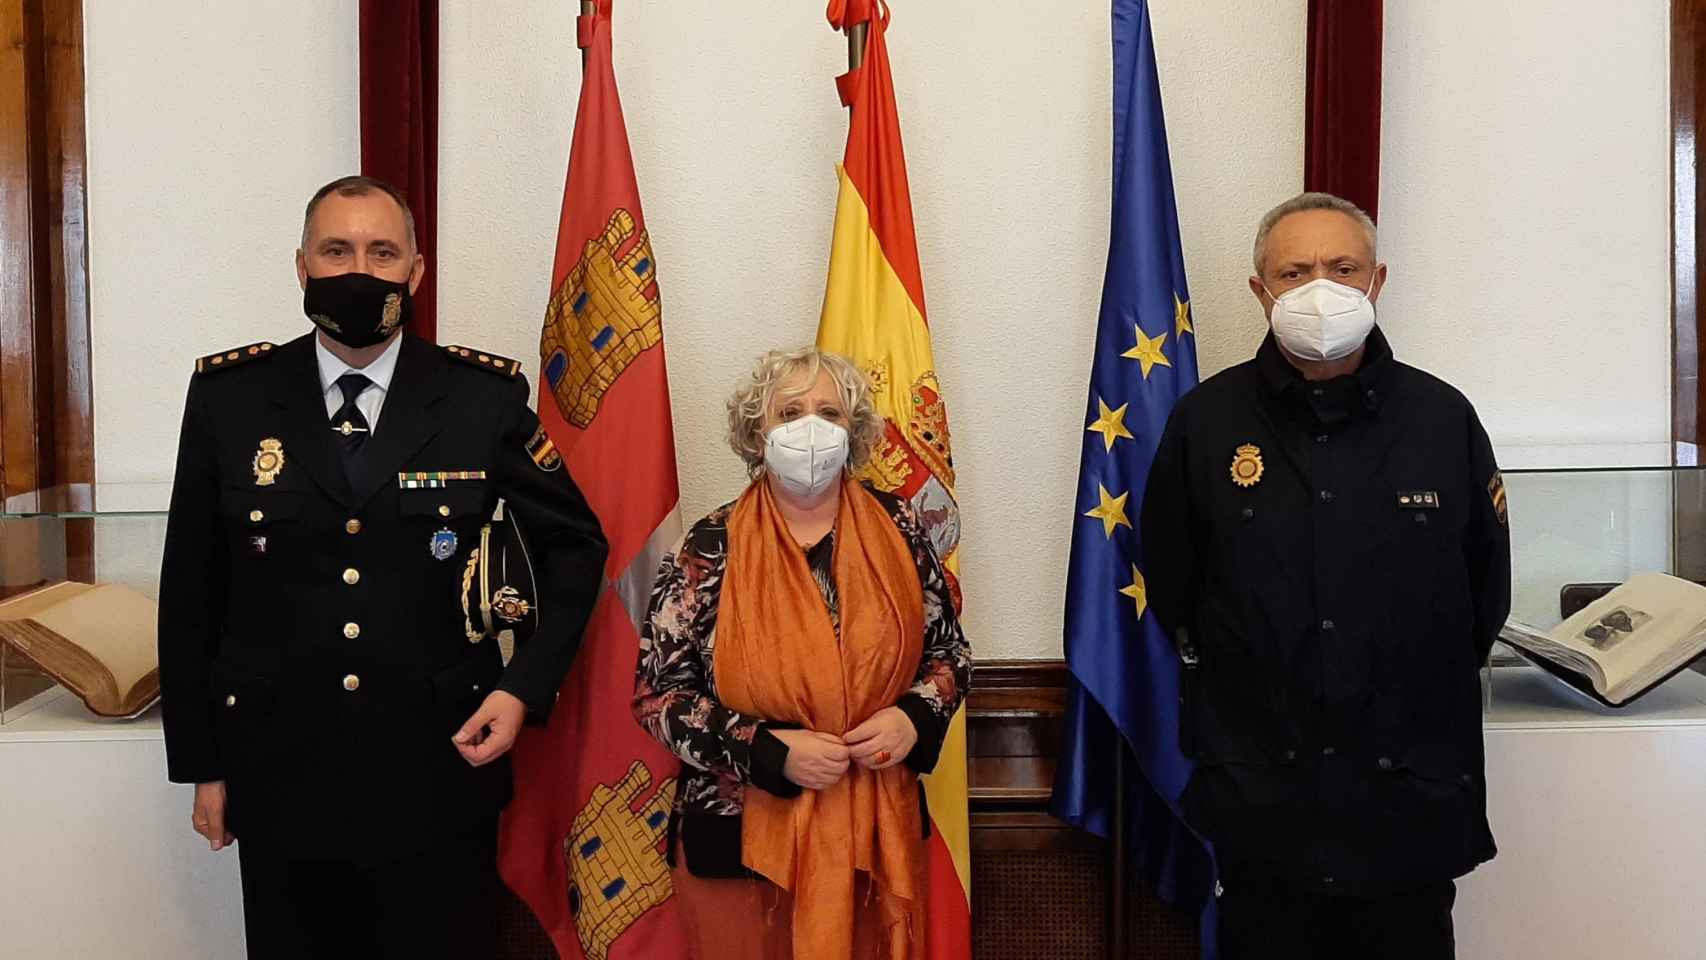 Recepción en la Subdelegación del Gobierno al nuevo Comisario Jefe de Salamanca